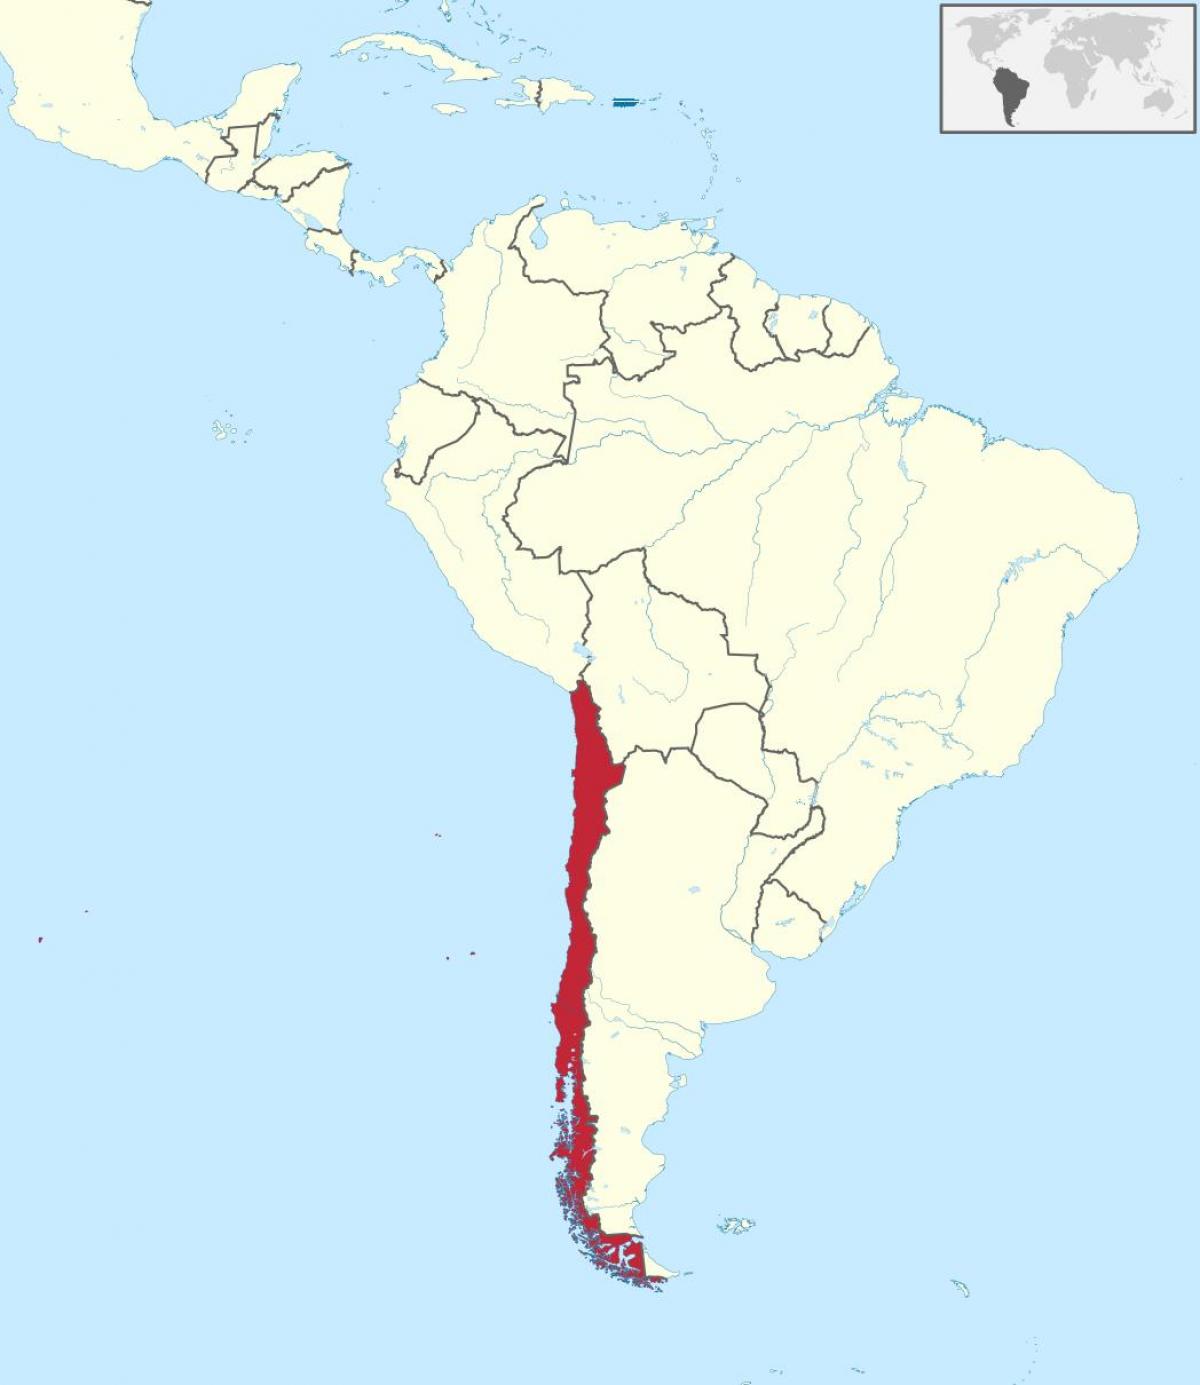 ჩილეს სამხრეთ ამერიკის რუკა